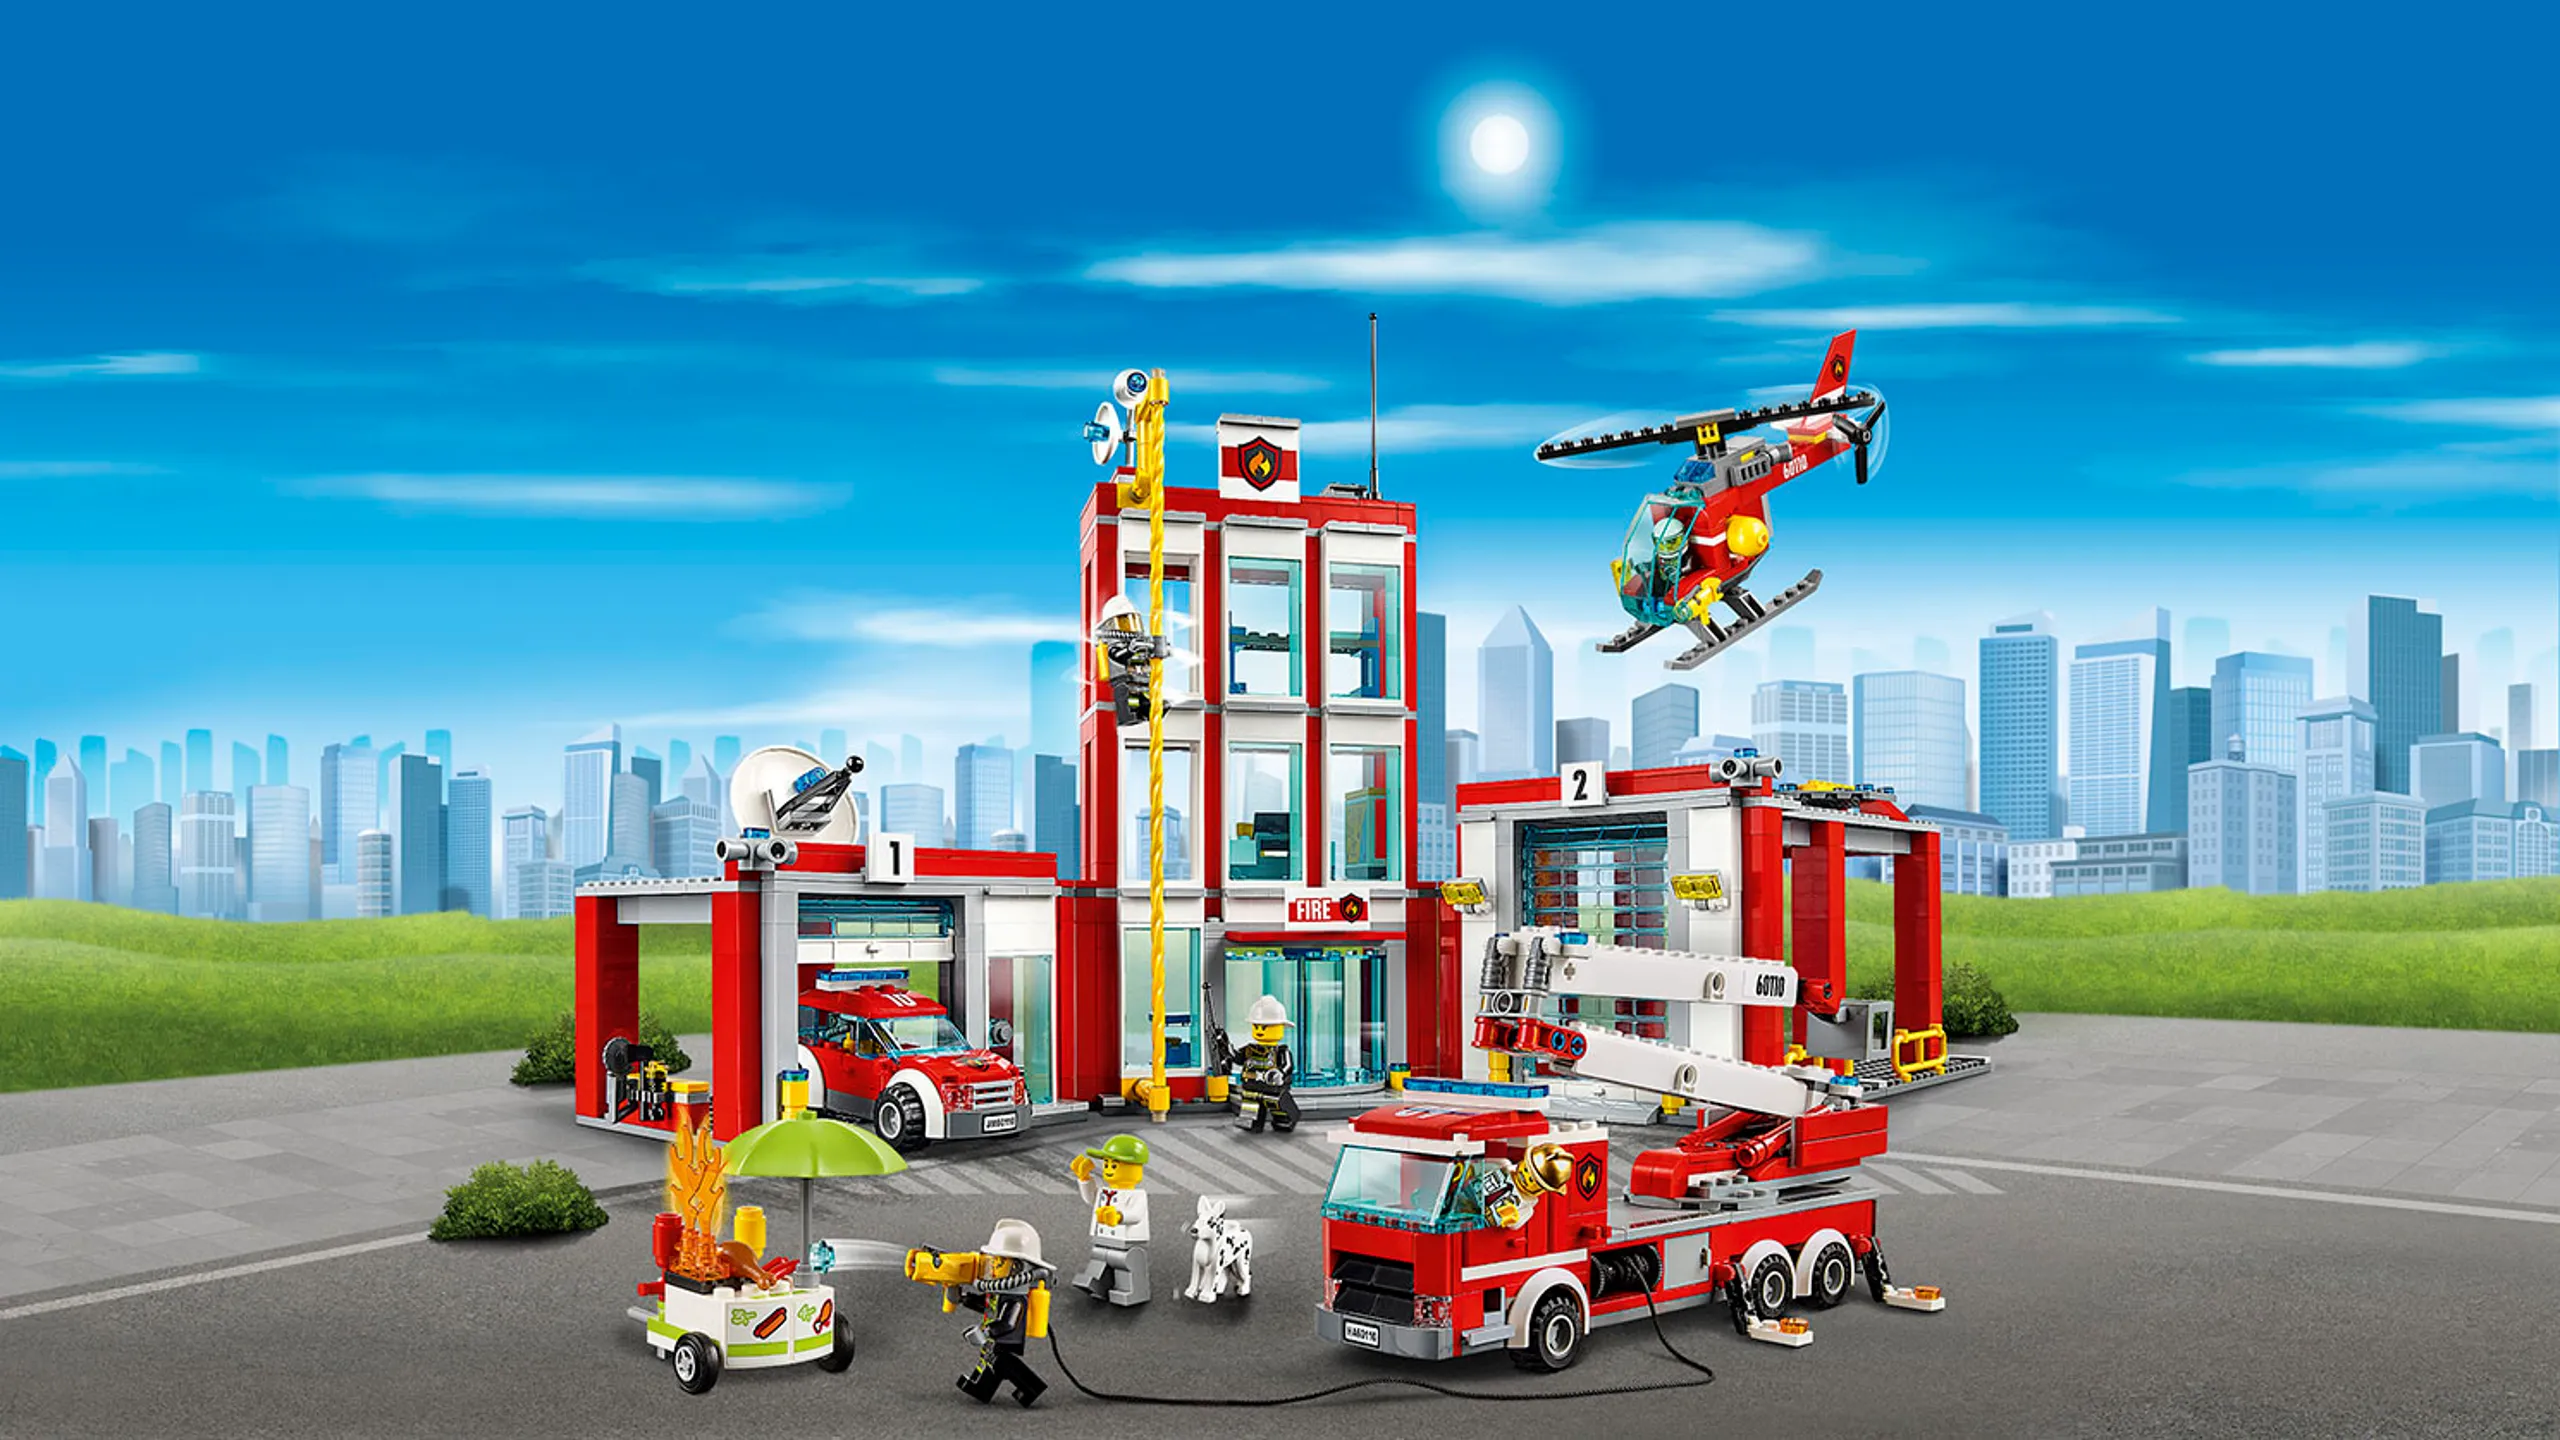 LEGO City hasičská stanice s vozidly a minifigurkami hasičů – Hasičská stanice 60110